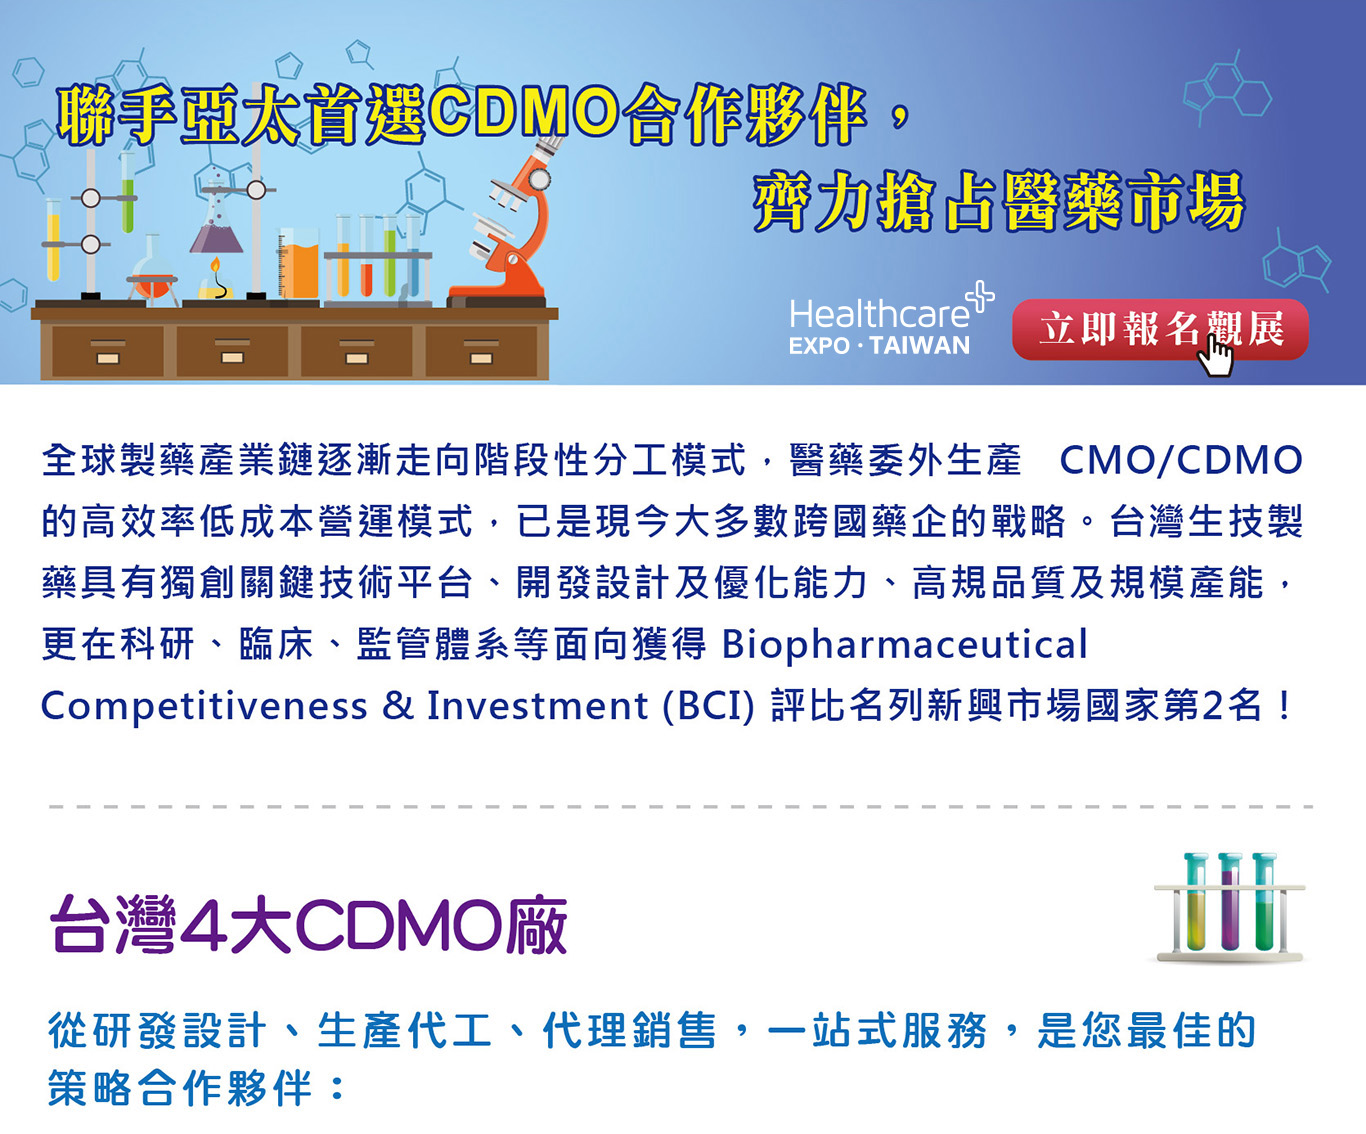  聯手亞太首選CDMO合作夥伴，齊力搶占醫藥市場  